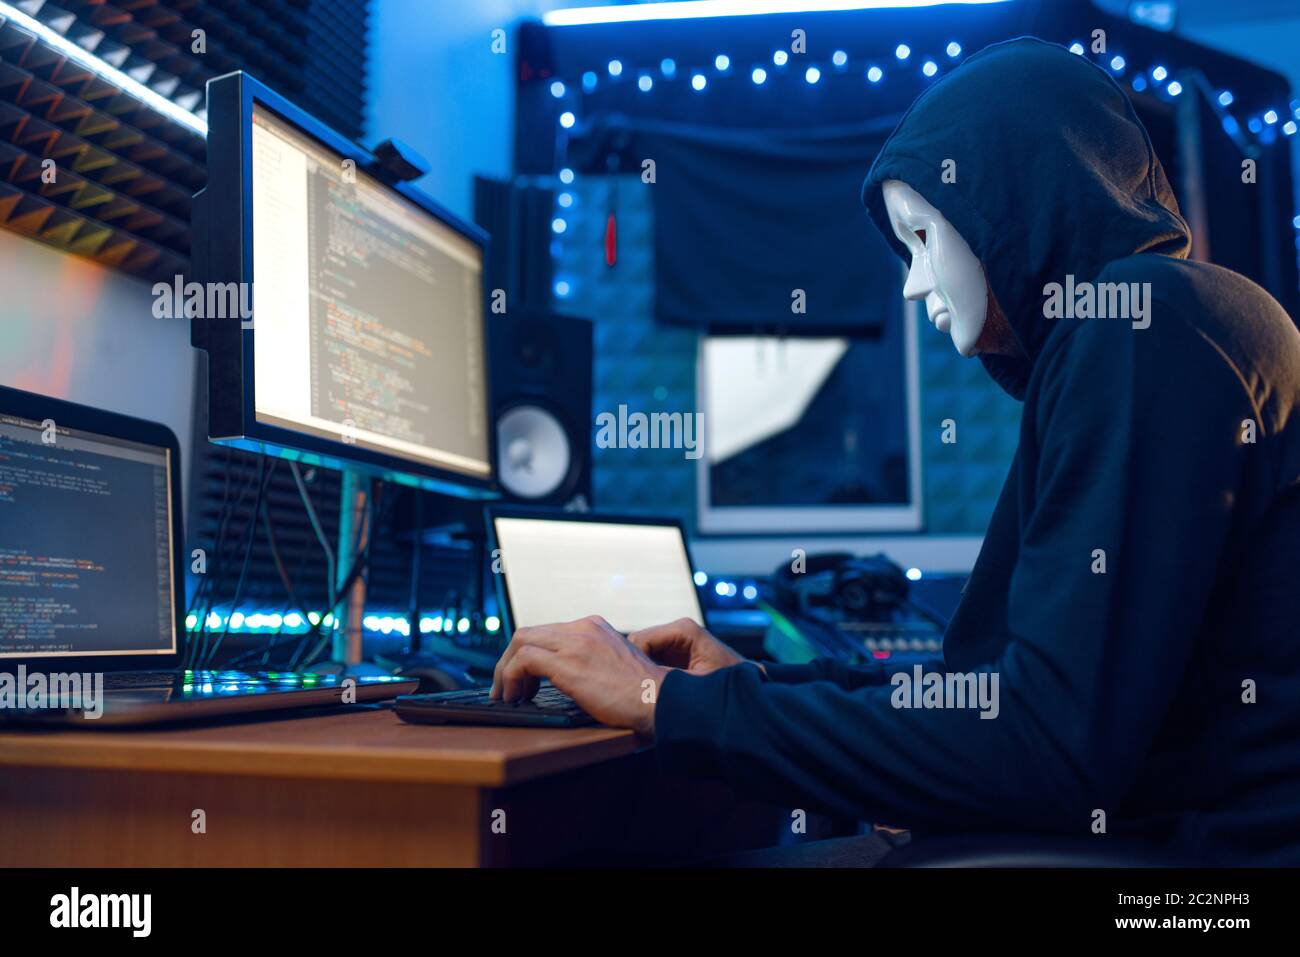 Hacker in maschera e cappuccio seduto sul suo posto di lavoro con laptop e PC, password o account hacking. Internet spia, stile di vita illegale, lavoro di rischio, rete c Foto Stock